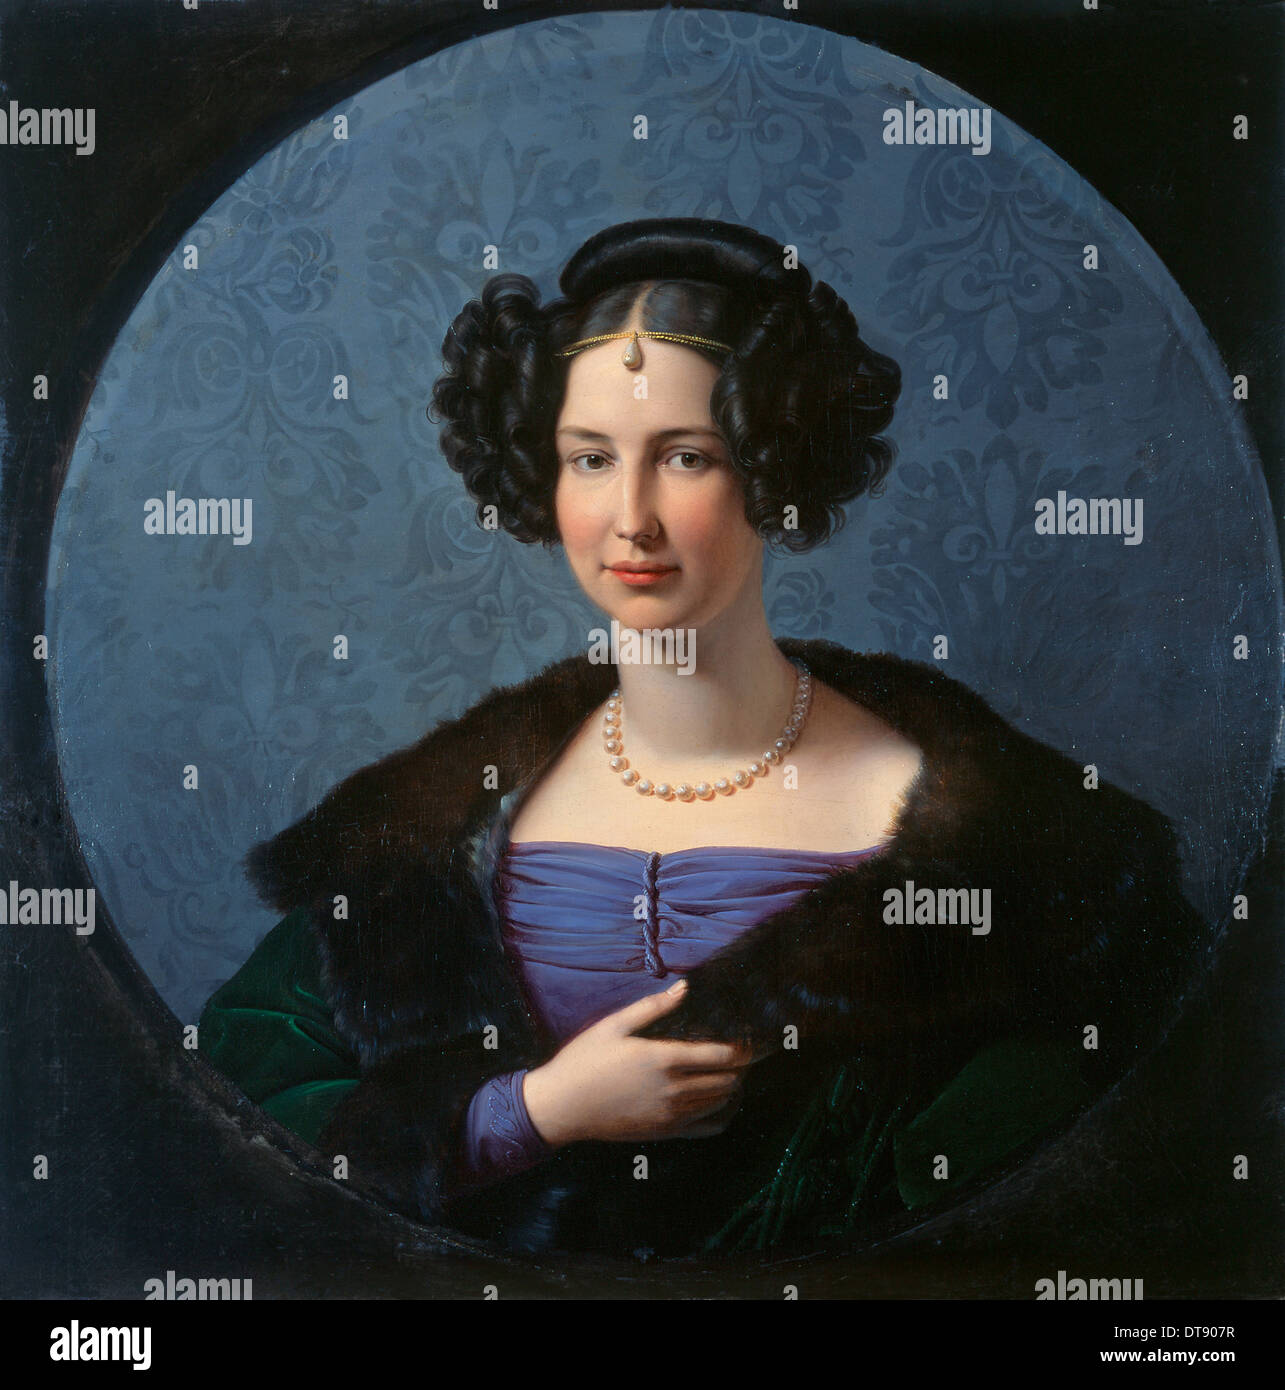 Princess Luise of Anhalt-Bernburg (1799-1882), c. 1840. Artist: Schadow, Friedrich Wilhelm, von (1788-1862) Stock Photo